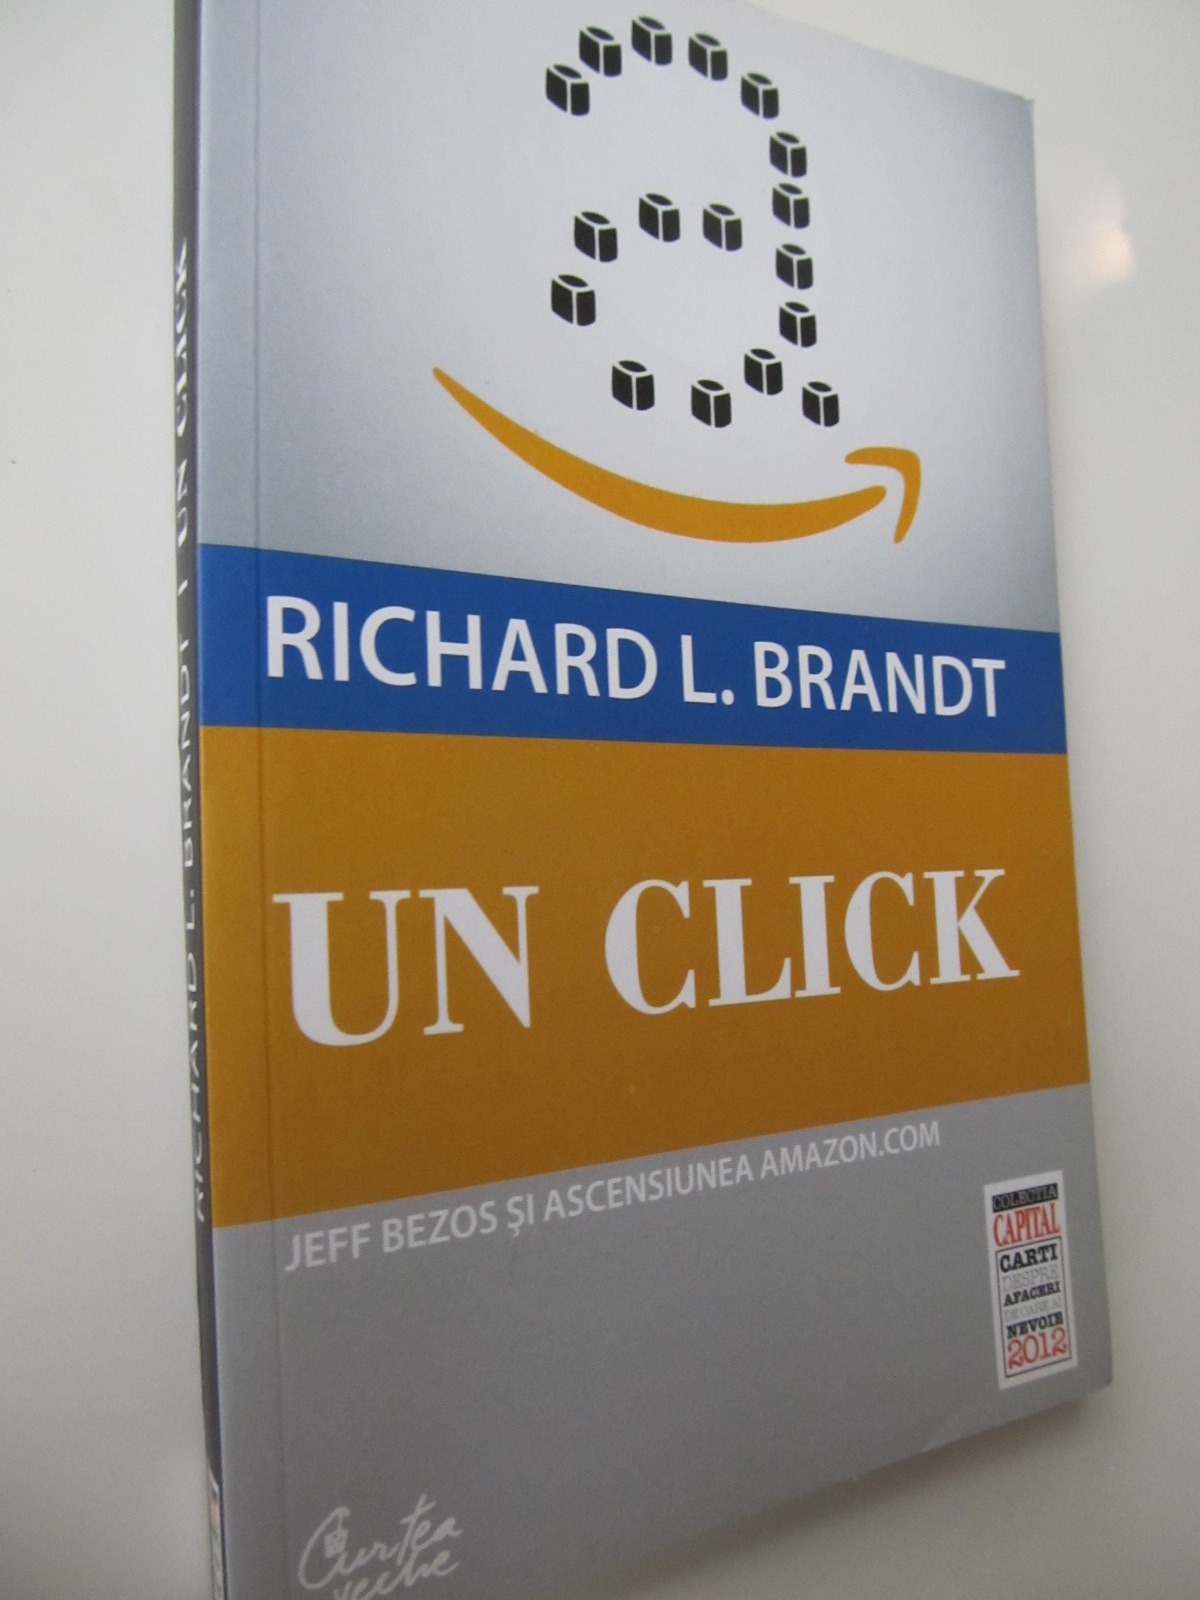 Un click - Jeff Bezos si ascensiunea Amazon.com - Richard Brandt | Detalii carte